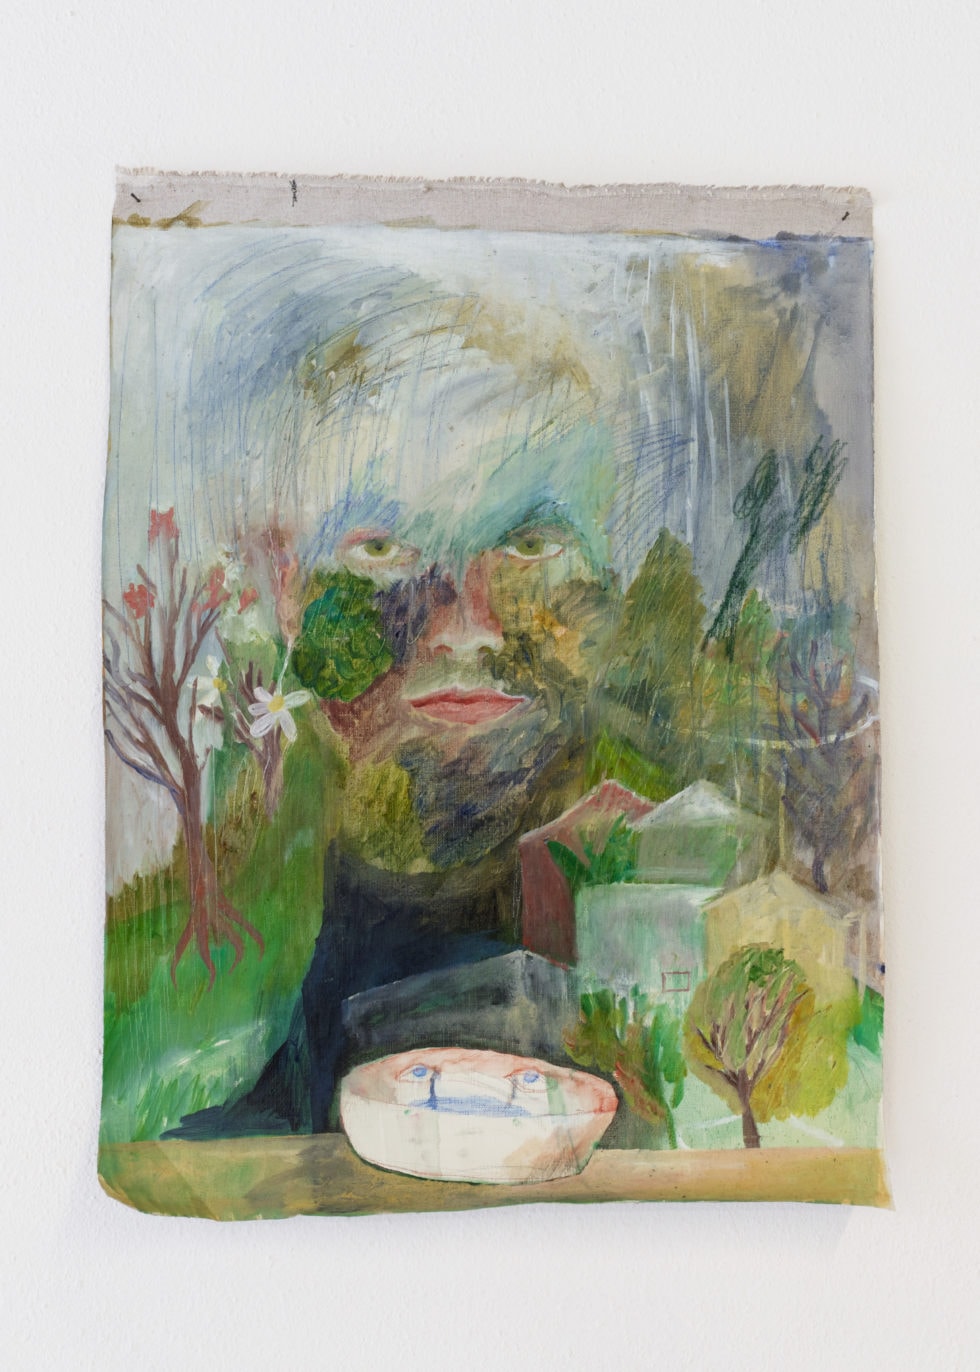 Masha Silchenko, Yugarawa, 50x62 cm, huile sur toile, 2019 © Masha Silchenko